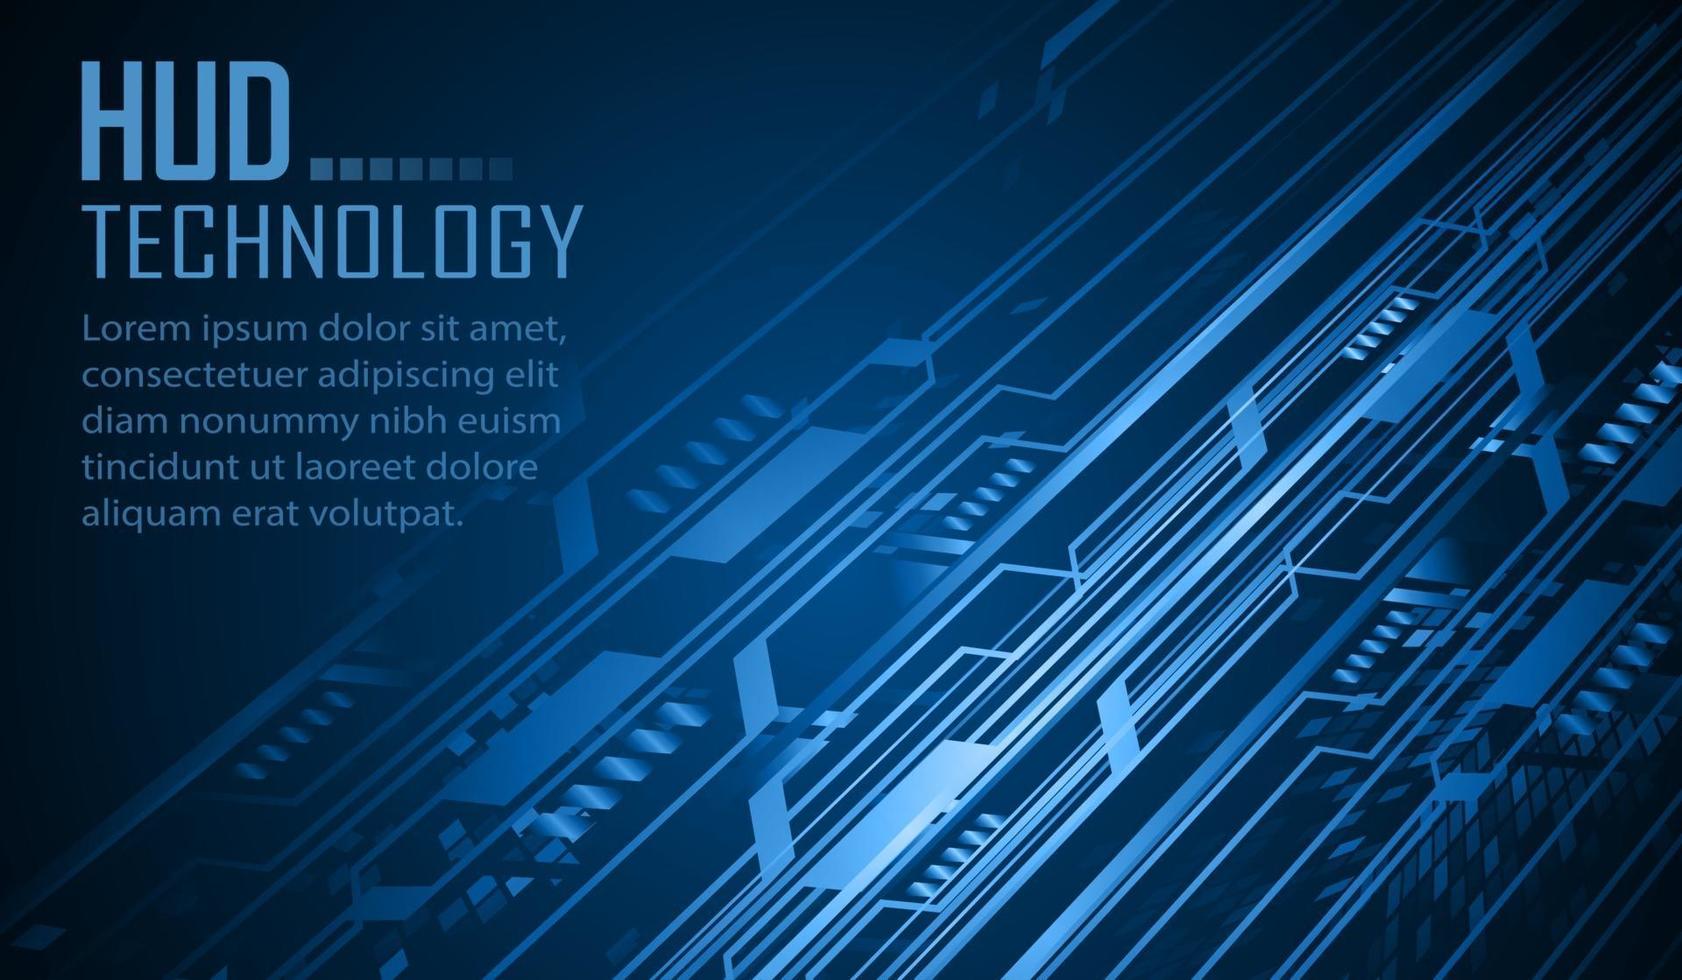 testo cyber circuito futuro concetto di tecnologia background cyber vettore